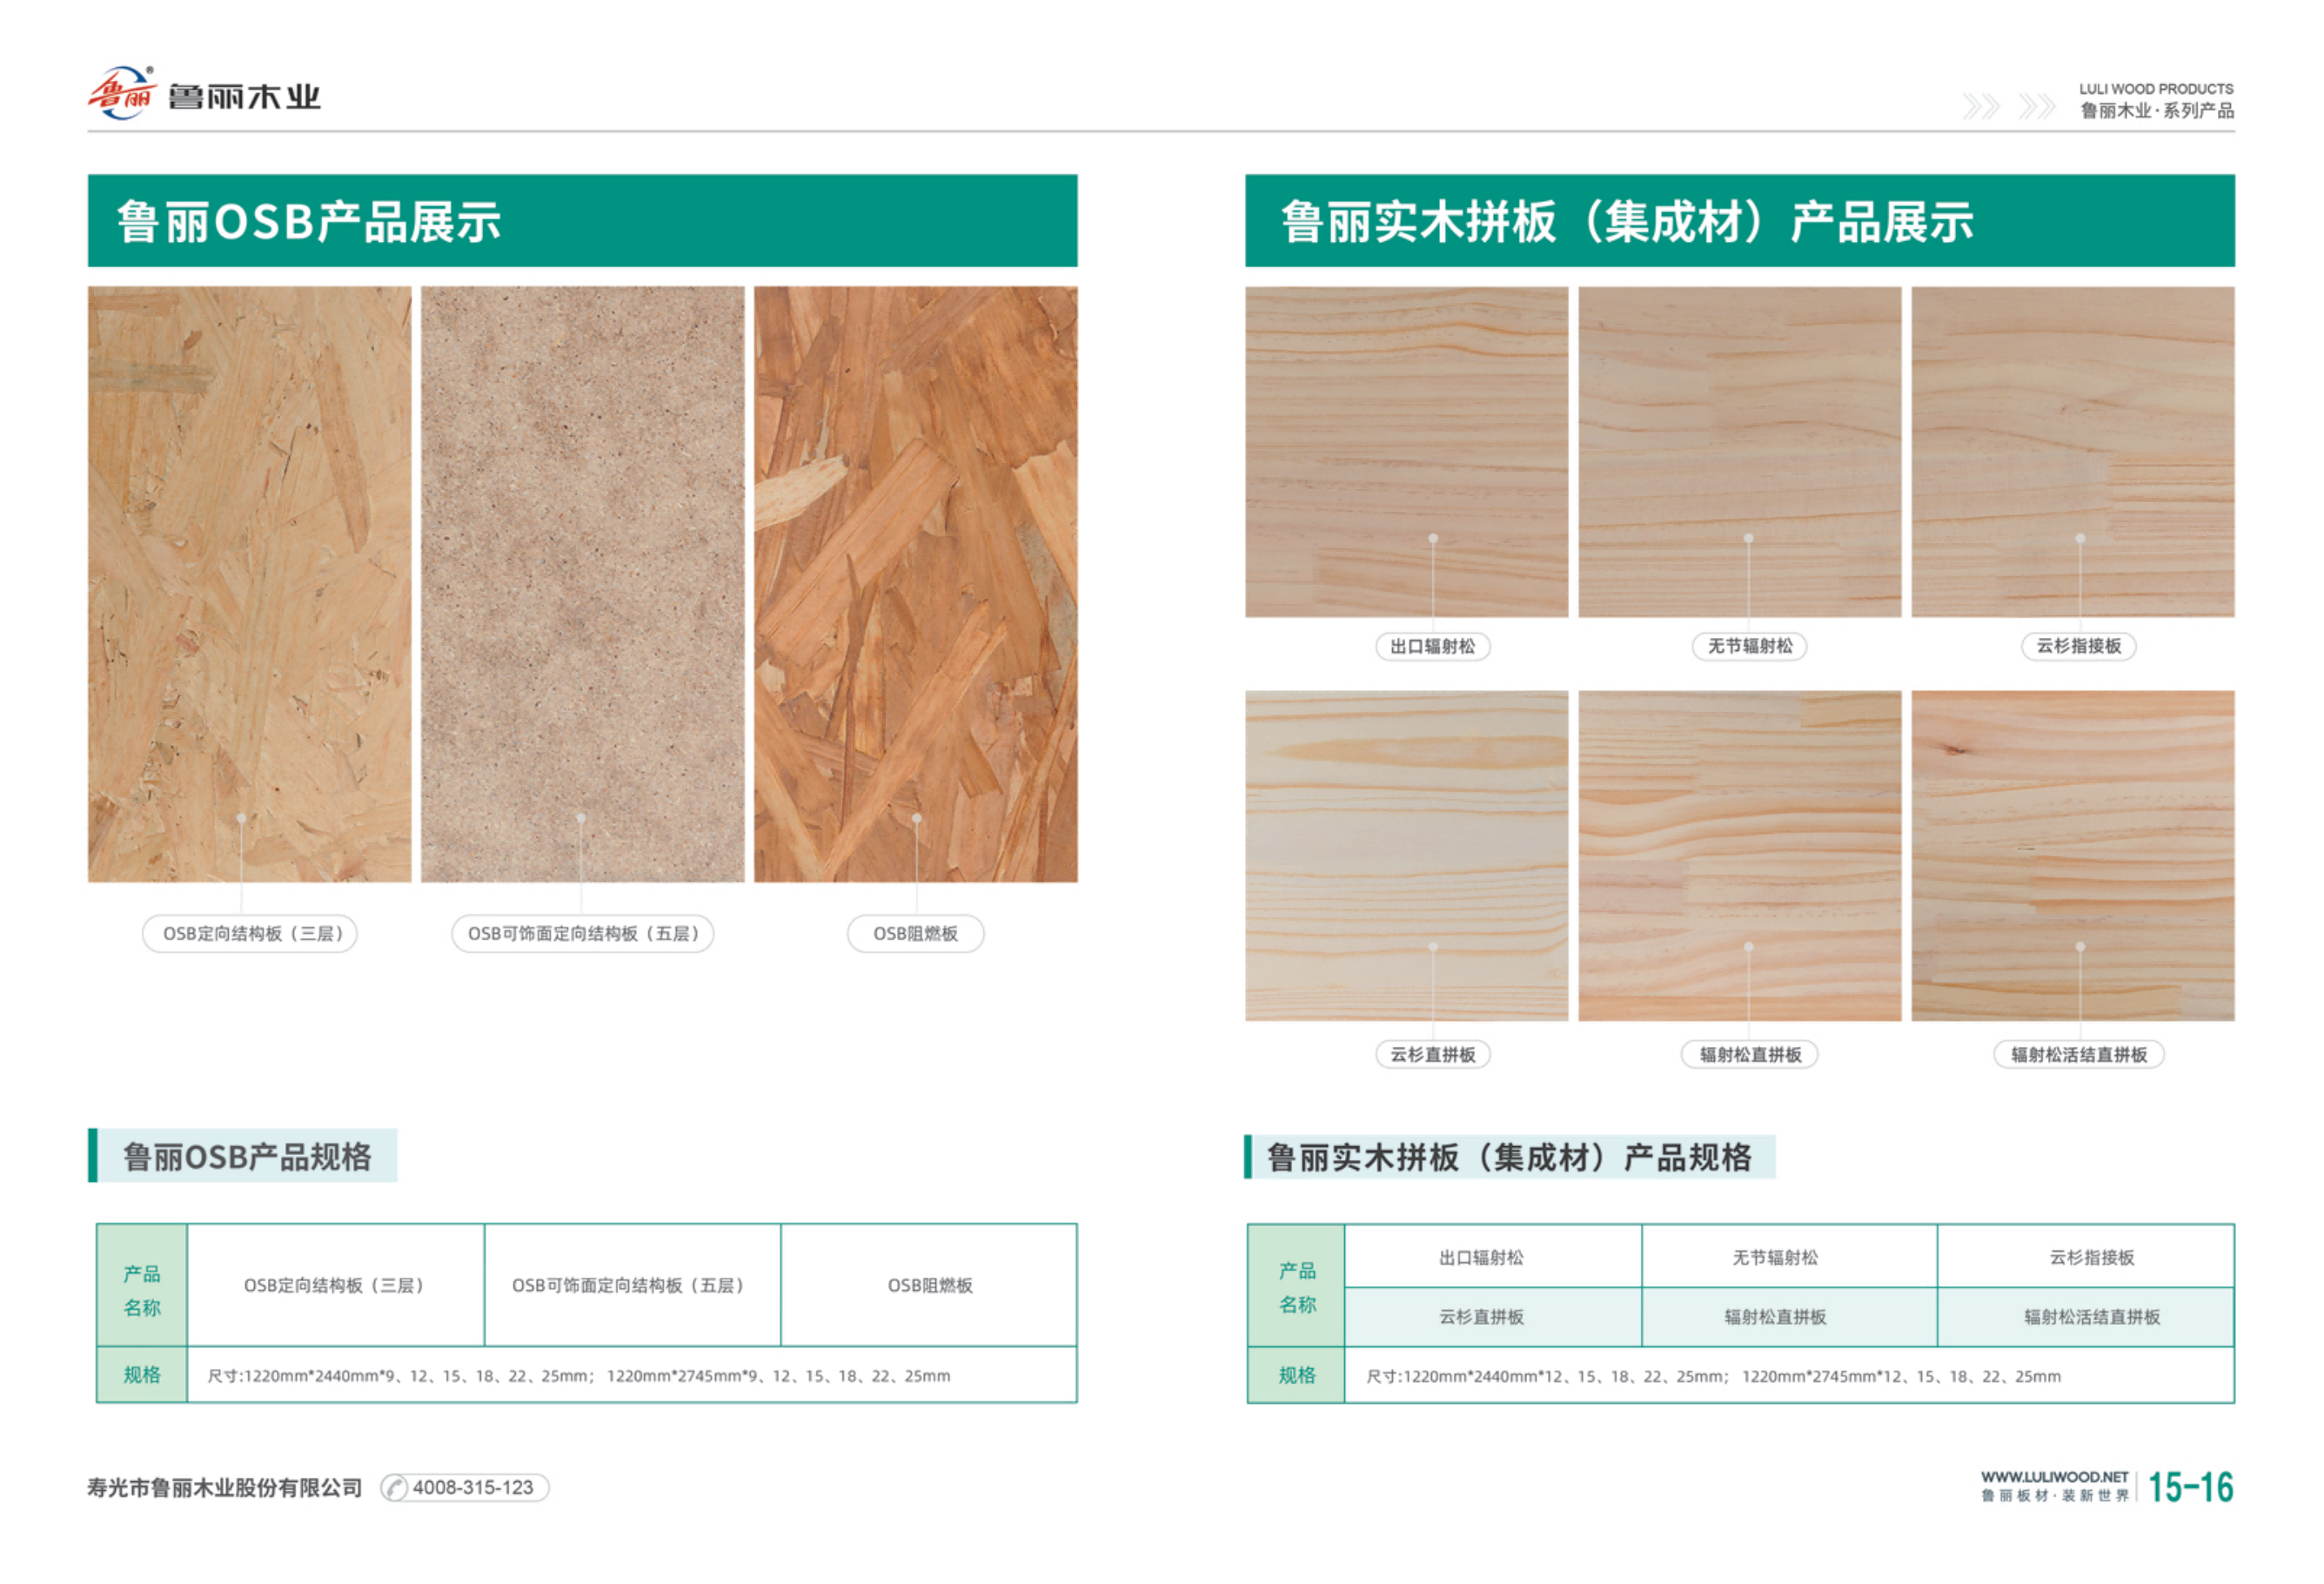 木业产品手册_08.png